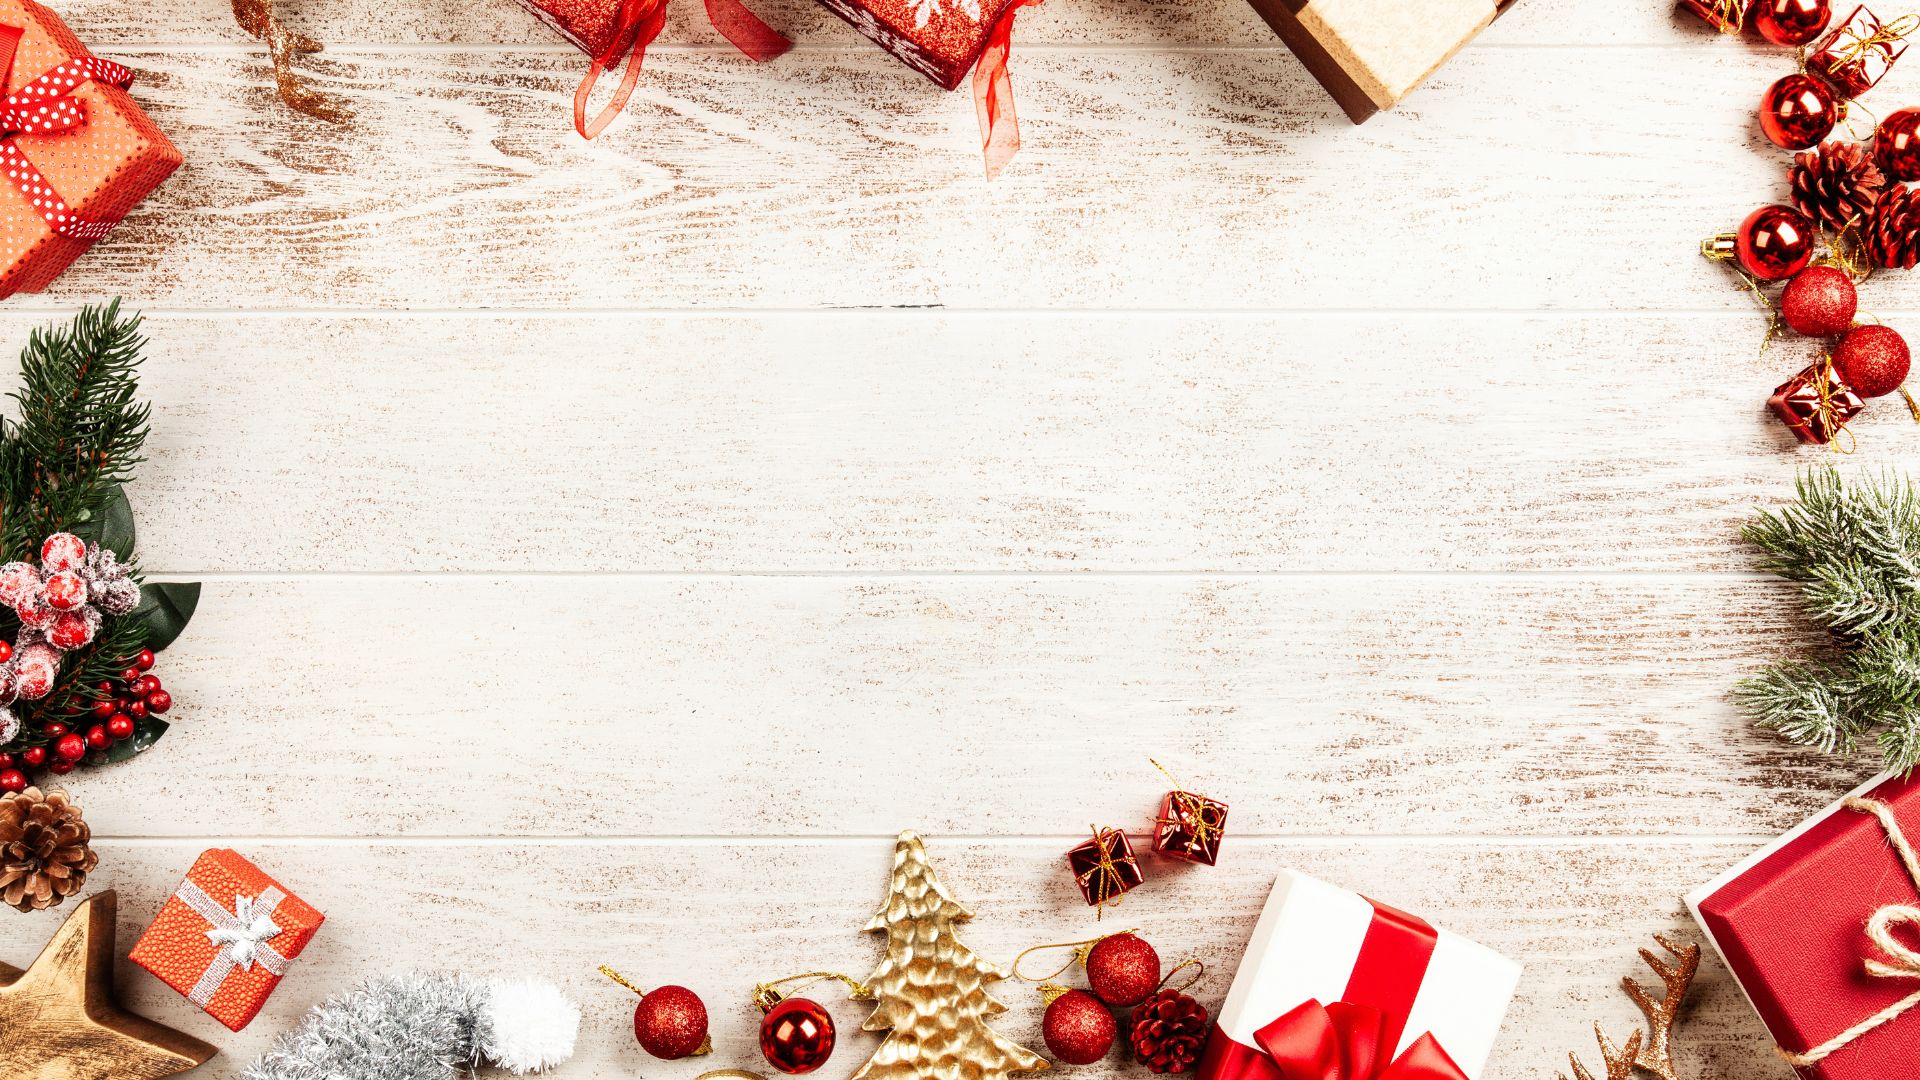 Imagem de fundo bege com moldura que trazem elementos natalinos como caixas de presentes com laços vermelhos, bolas de natal e estrelas.